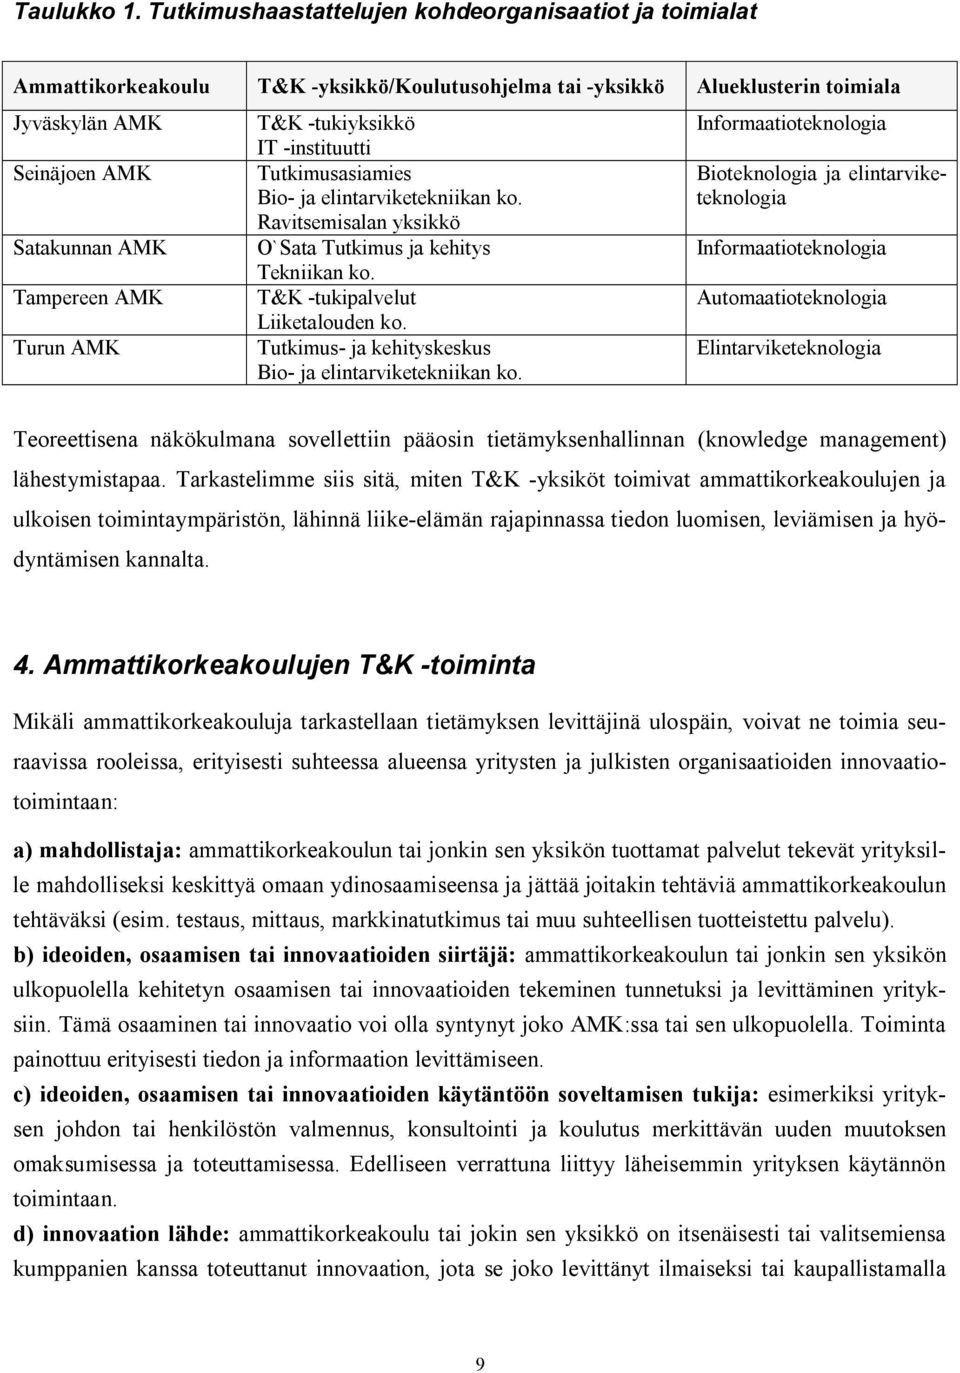 Turun AMK T&K -tukiyksikkö IT -instituutti Tutkimusasiamies Bio- ja elintarviketekniikan ko. Ravitsemisalan yksikkö O`Sata Tutkimus ja kehitys Tekniikan ko. T&K -tukipalvelut Liiketalouden ko.